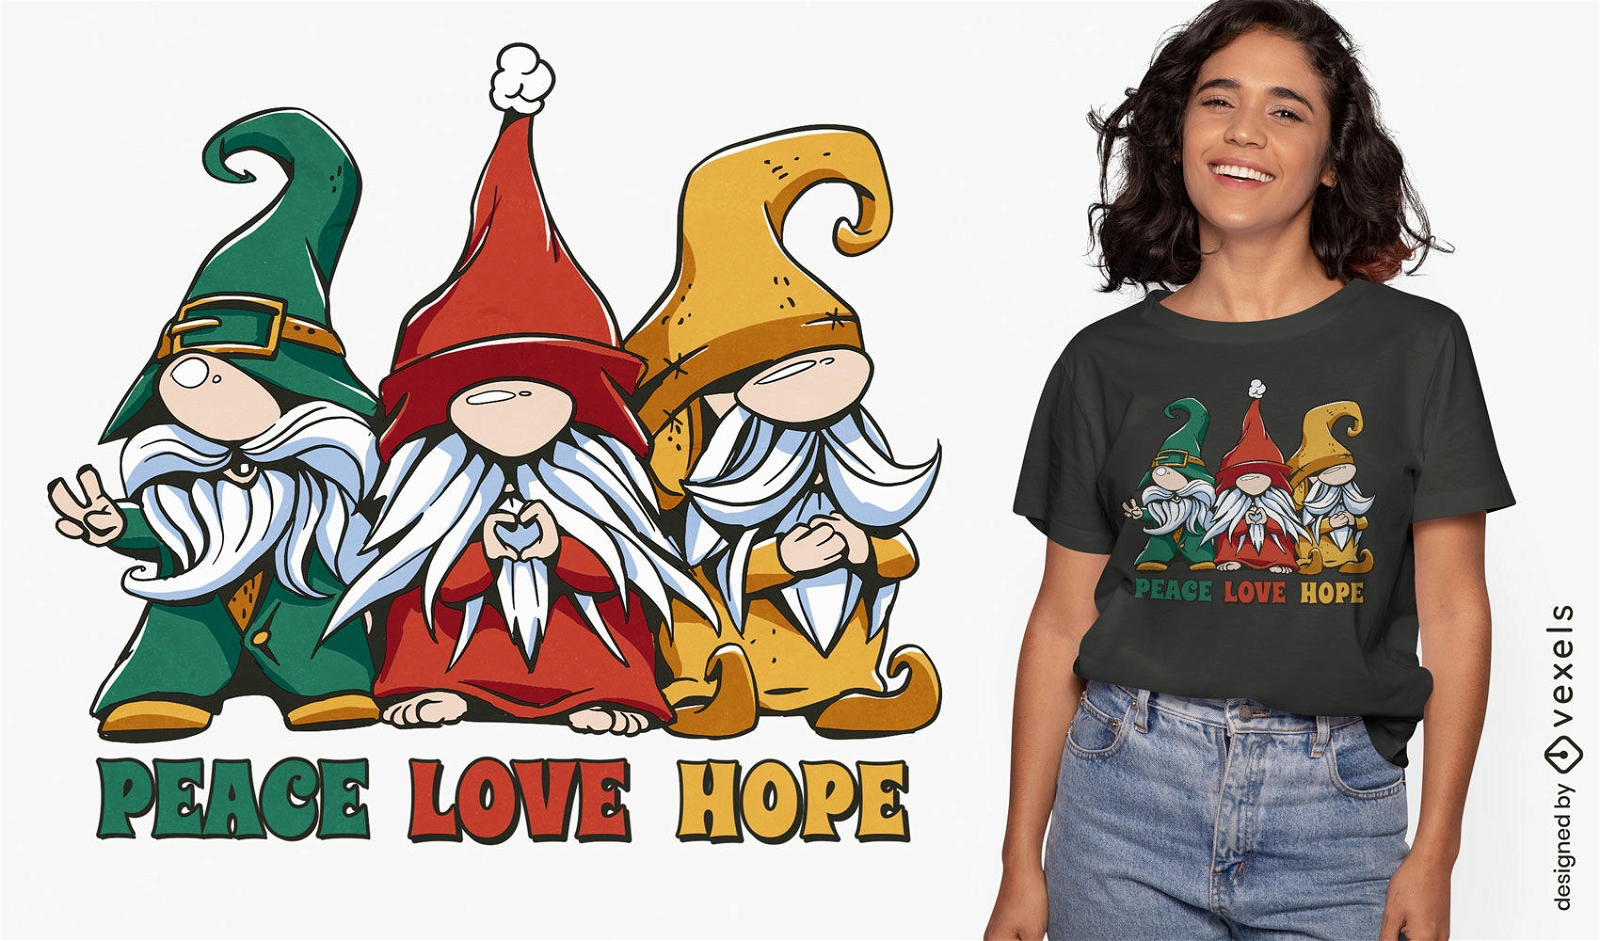 Fun gnome fantasy creatures t-shirt design